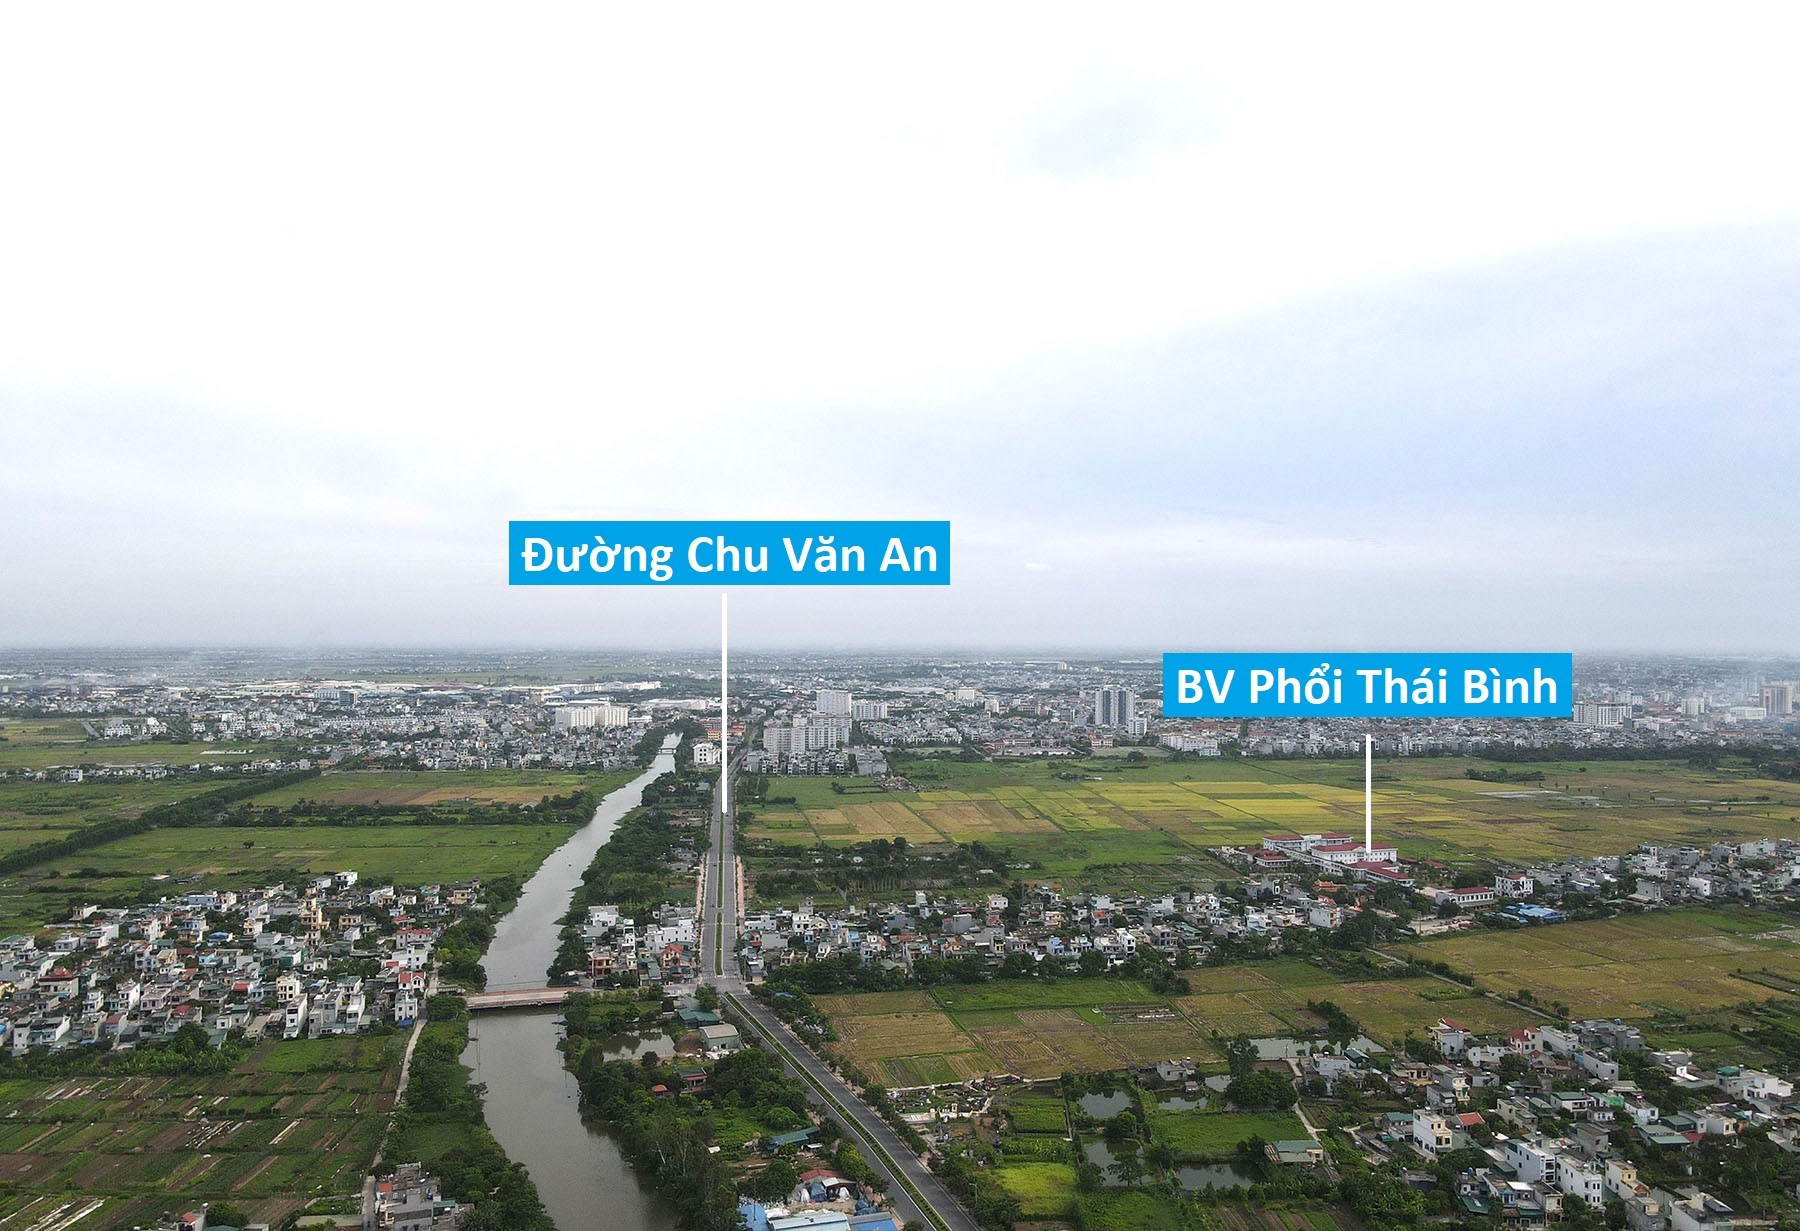 Toàn cảnh dự án đường Thái Bình - Cồn Vành sắp mở qua thành phố và huyện Vũ Thư